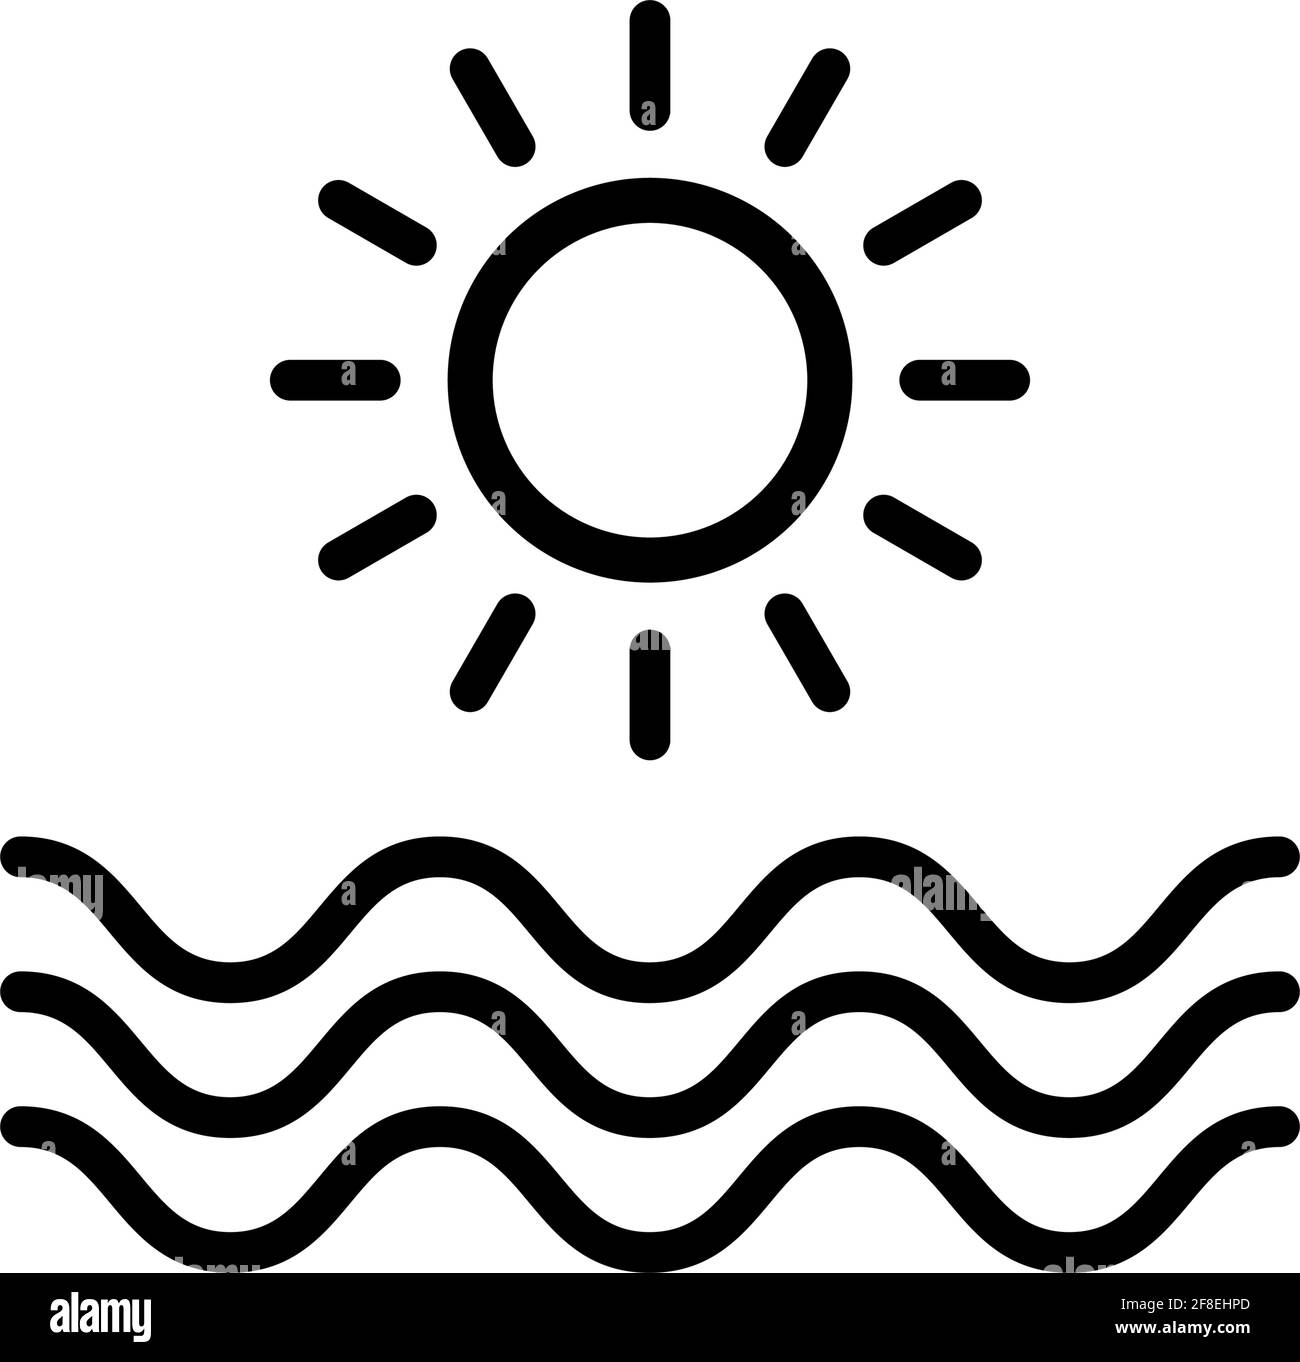 Umriss Ozean Symbol Vektor, Sommer Strand Zeichen mit Linie oder Form, Sonne Symbol Stock Vektor